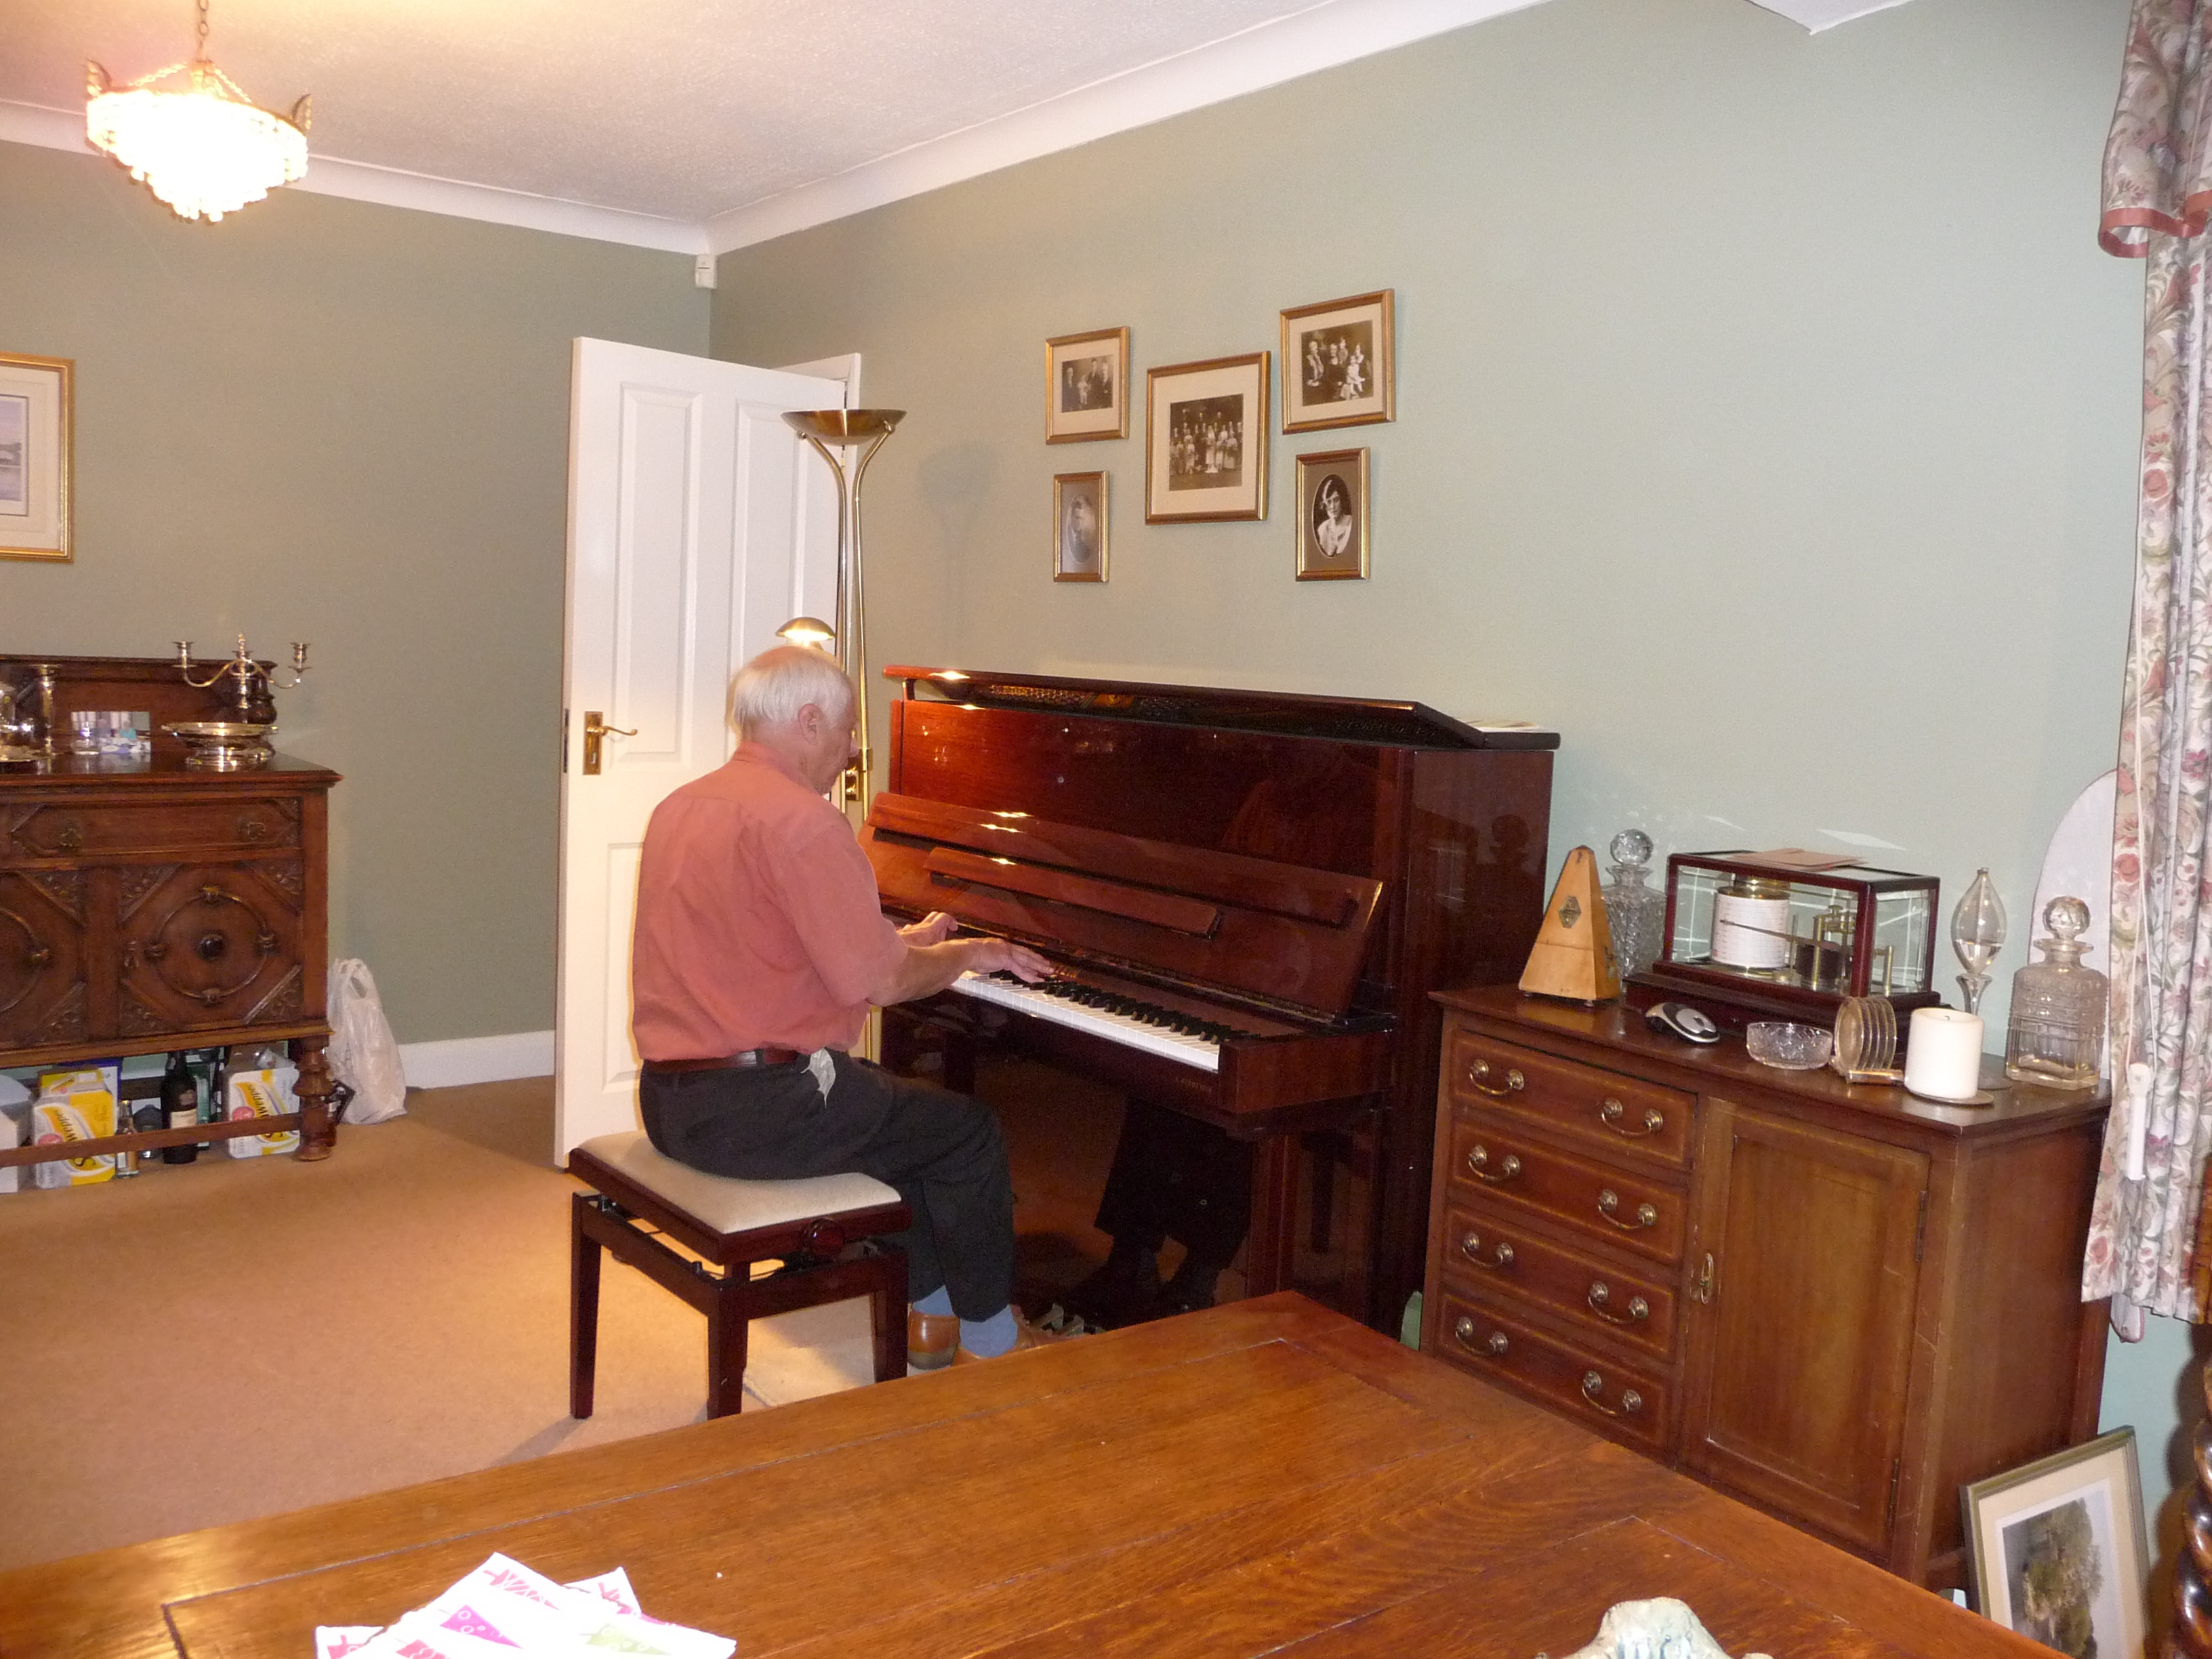 Image: Colin at the piano